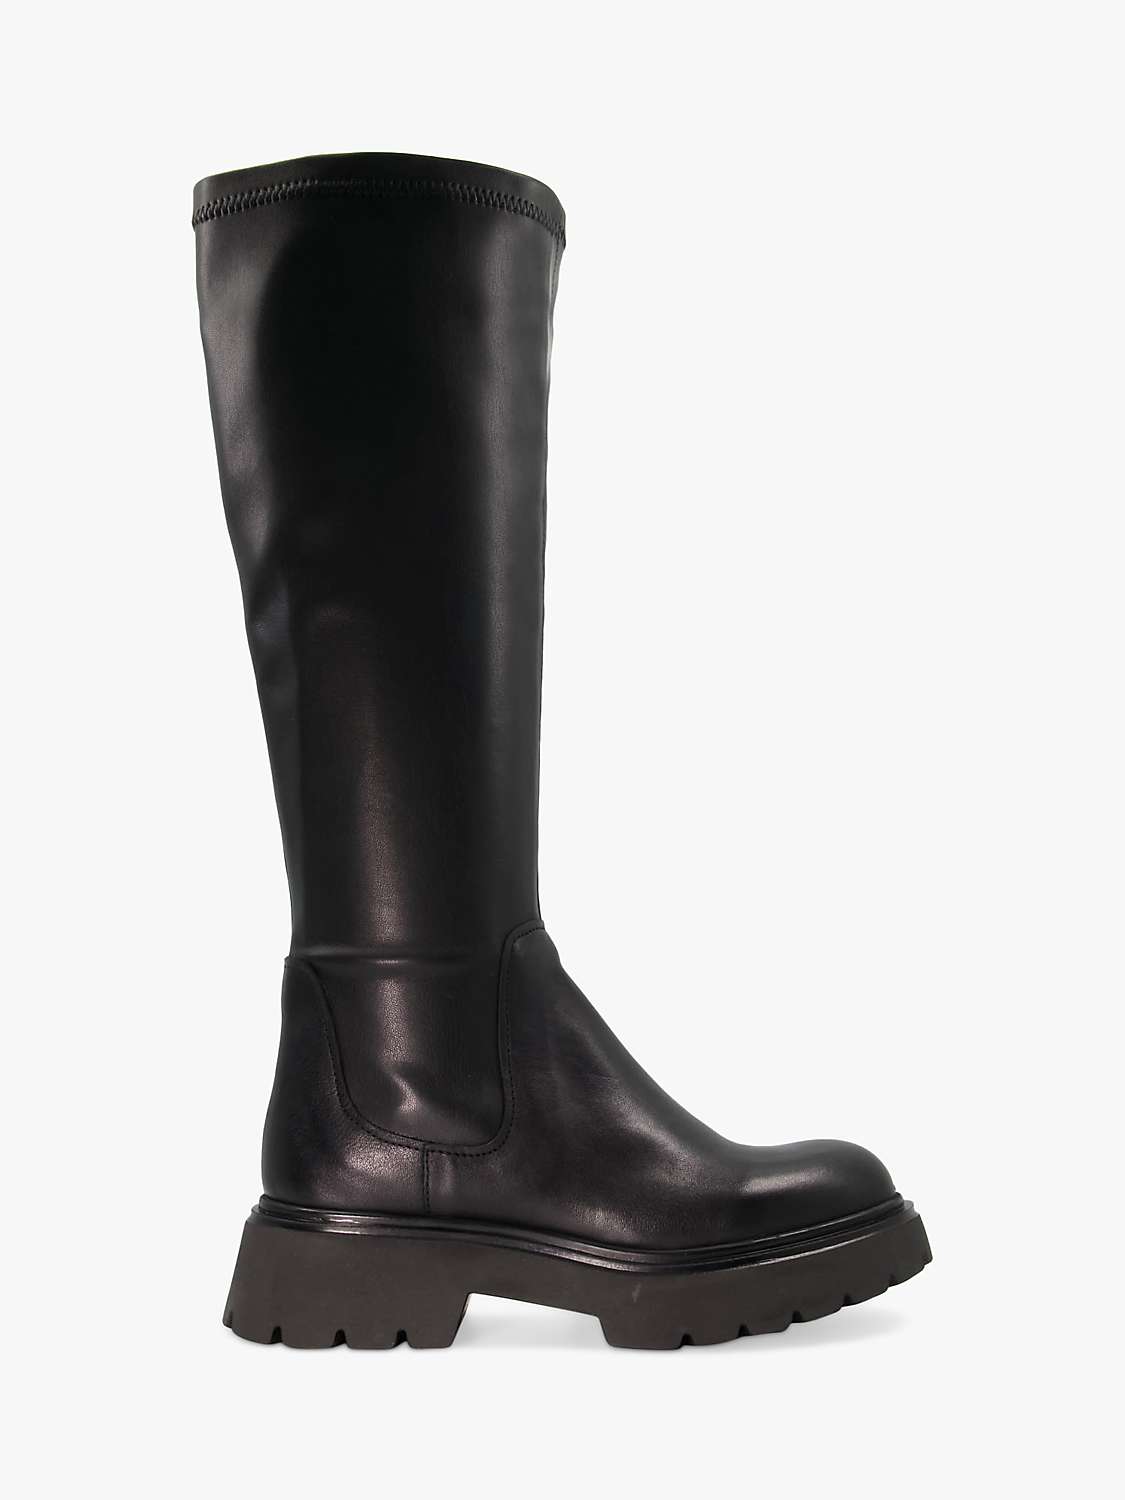 Buy Dune Tilt Leather Knee High Boots, Black Online at johnlewis.com